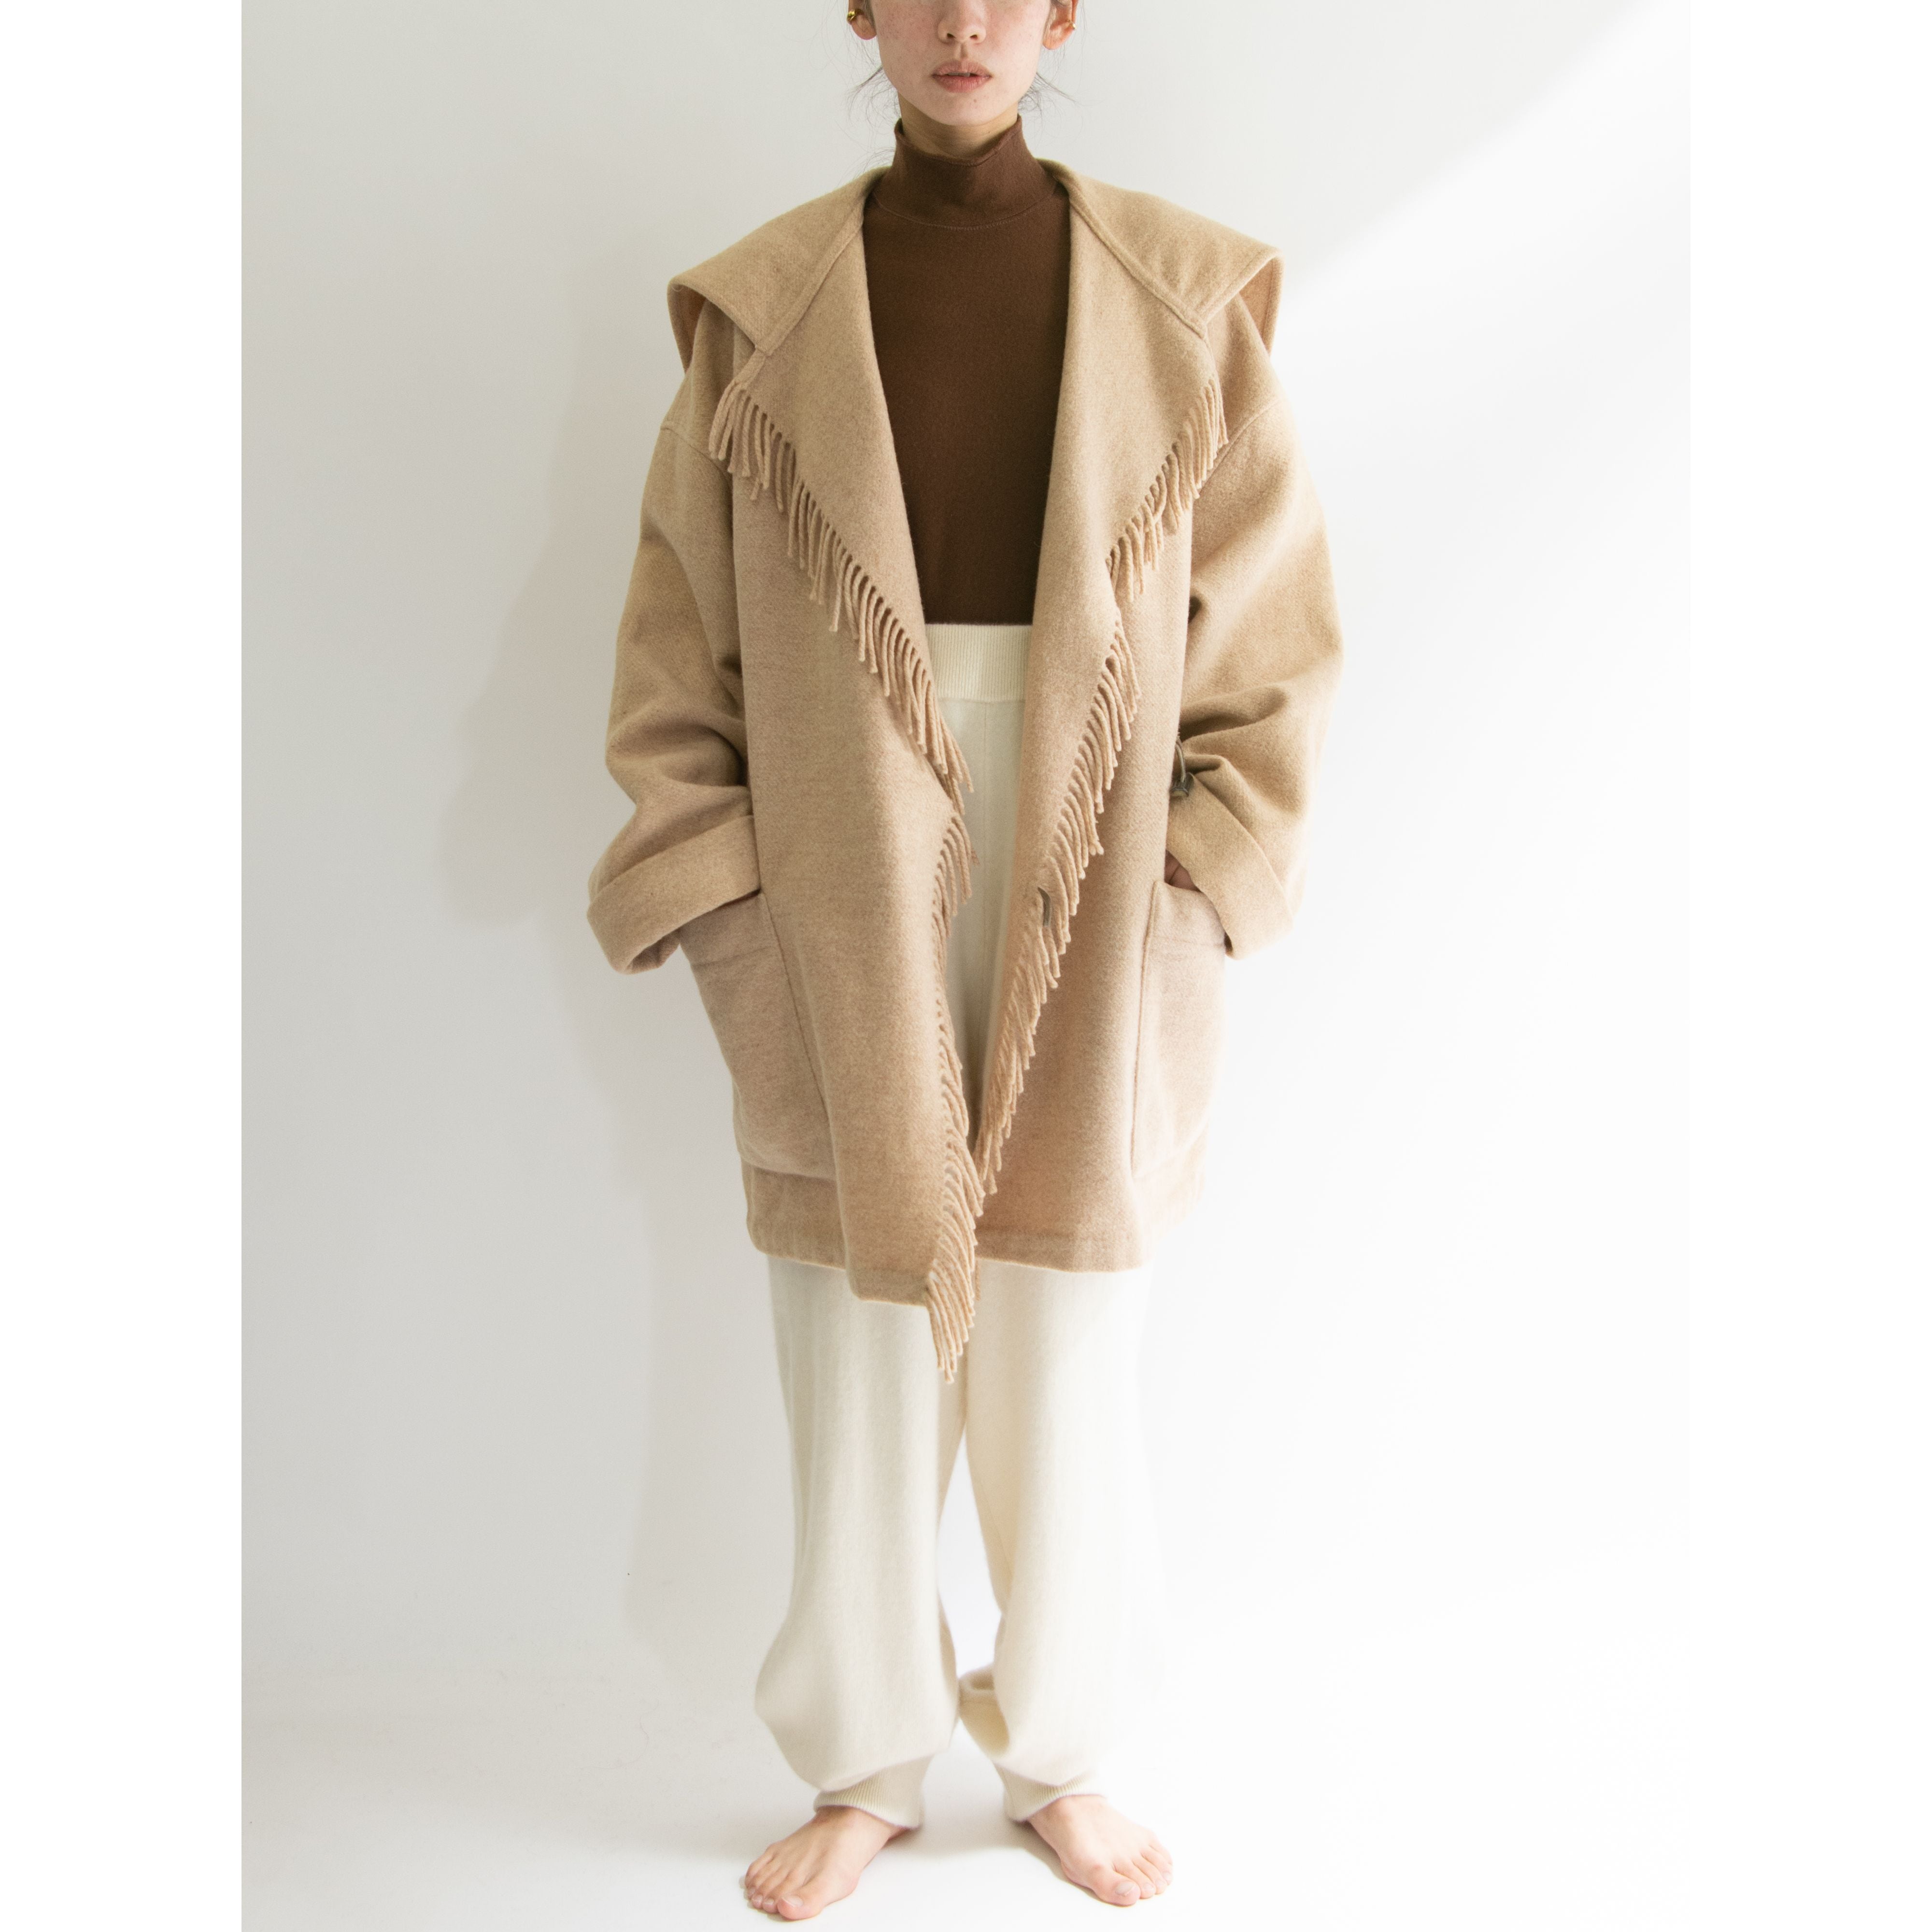 UNITED COLORS OF BENETTON】Oversized Wool Fringe Blanket Jacket